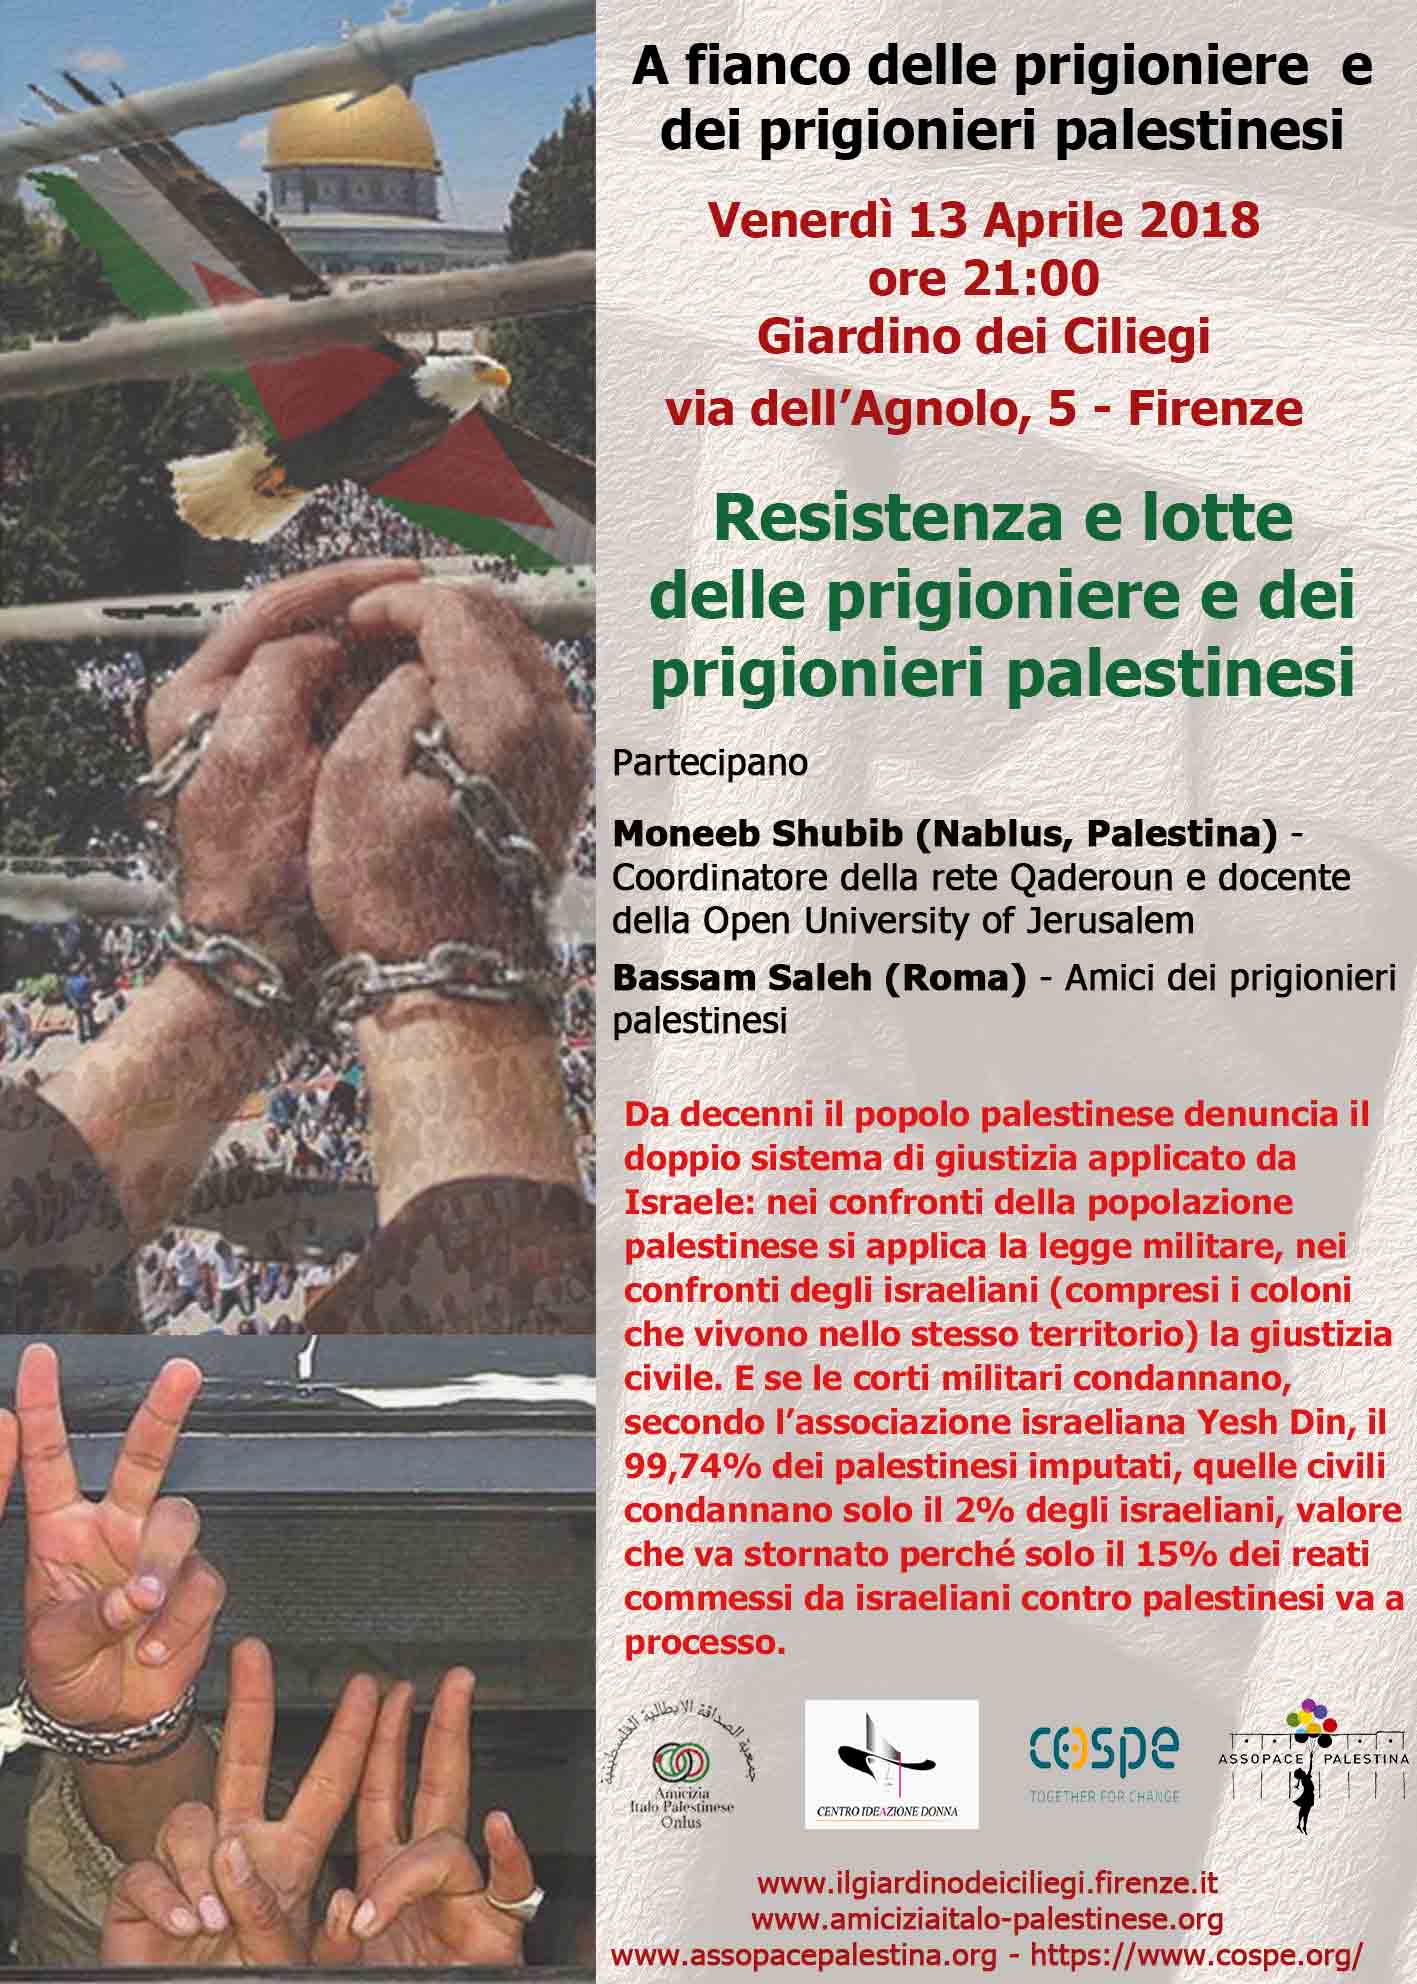 Firenze: 13 aprile – A fianco delle prigioniere e prigionieri palestinesi